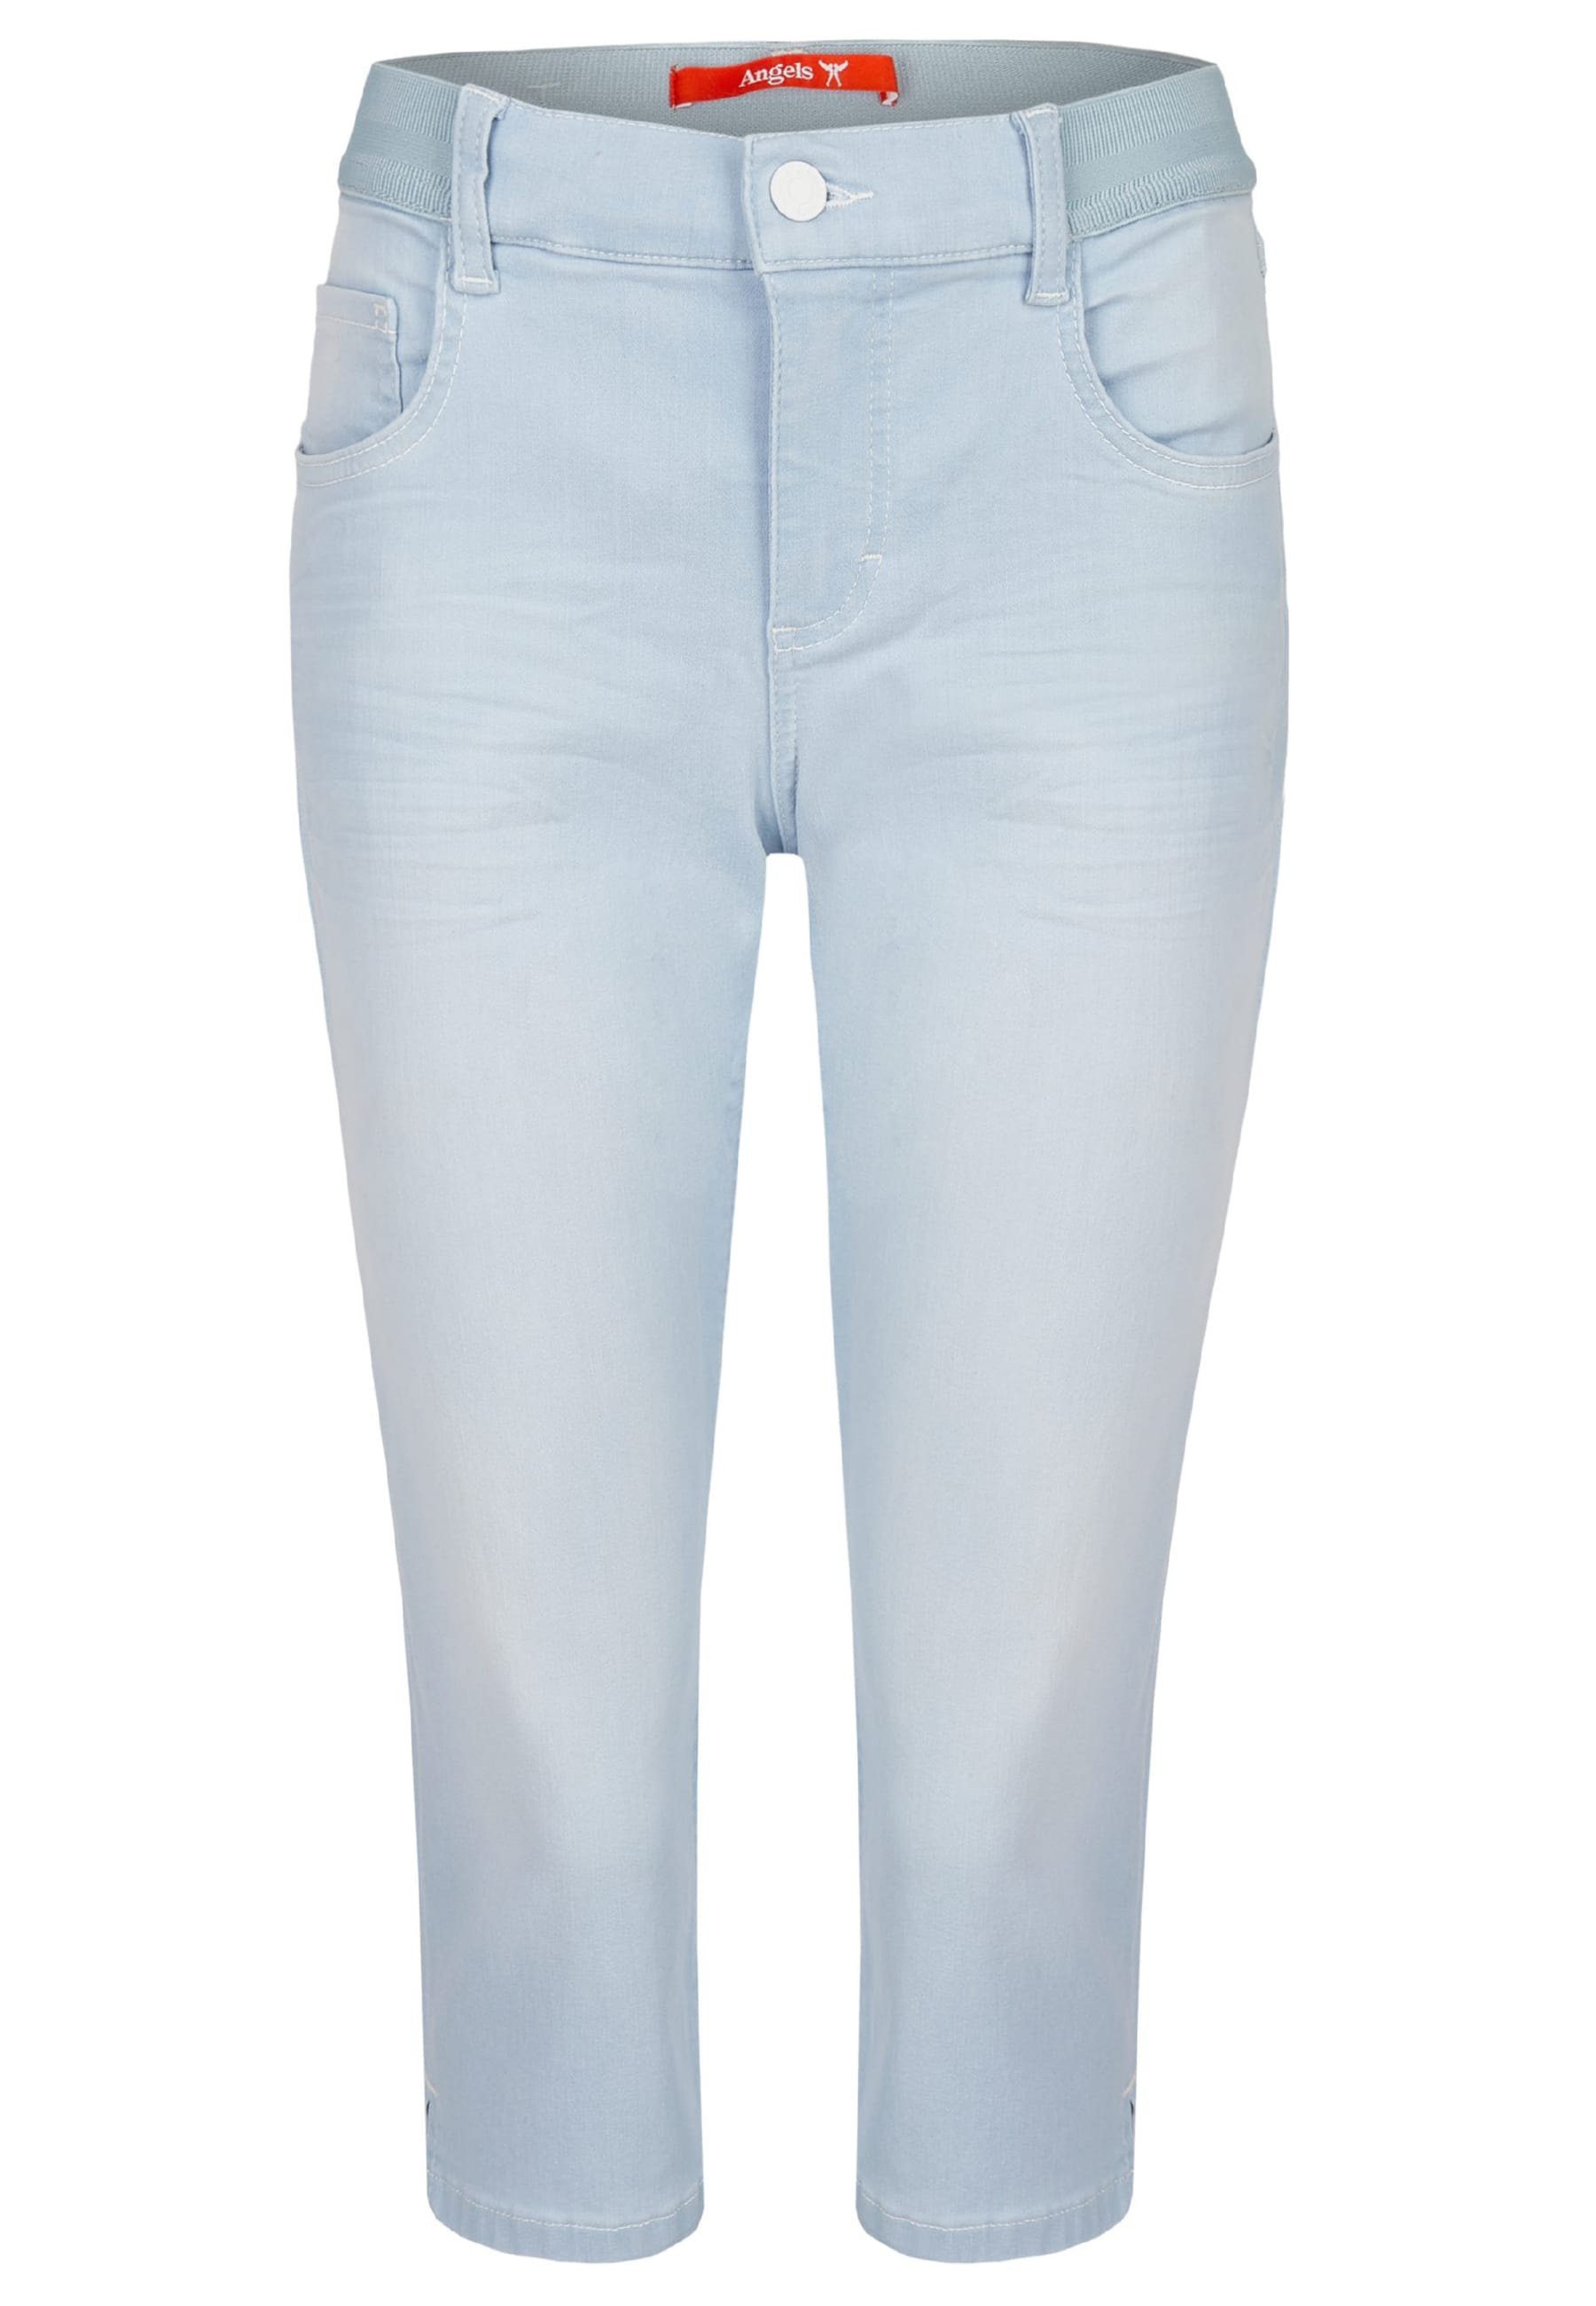 hellblau Dehnbund-Jeans Jeans Kurze Onesize Capri klassischem mit Design ANGELS